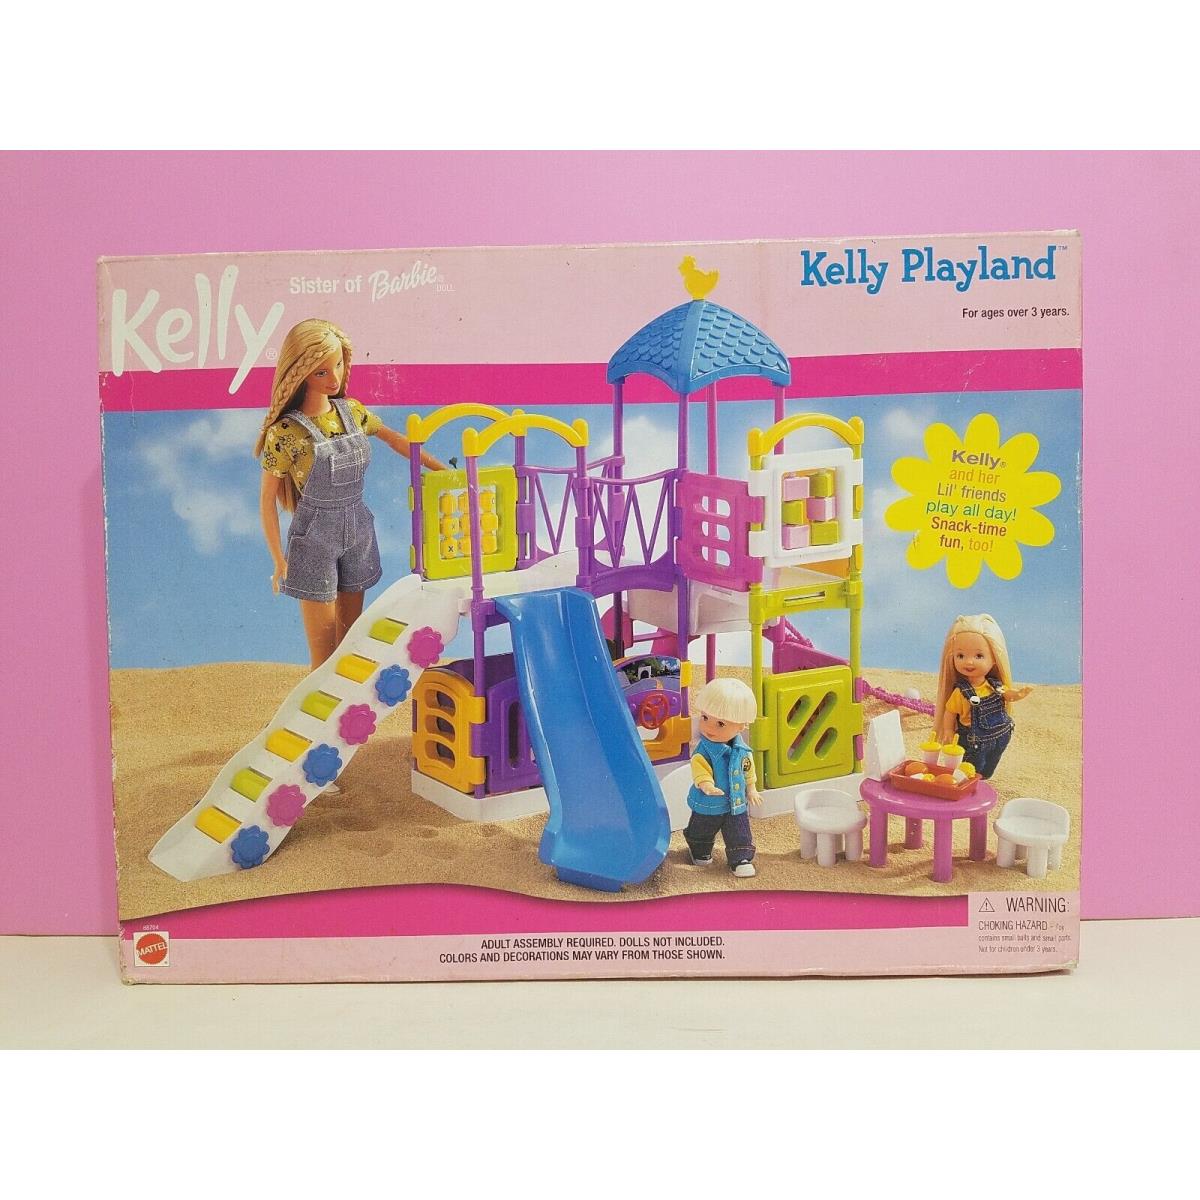 Vintage 2001 Kelly Sister Of Barbie Playland Play-set 88704